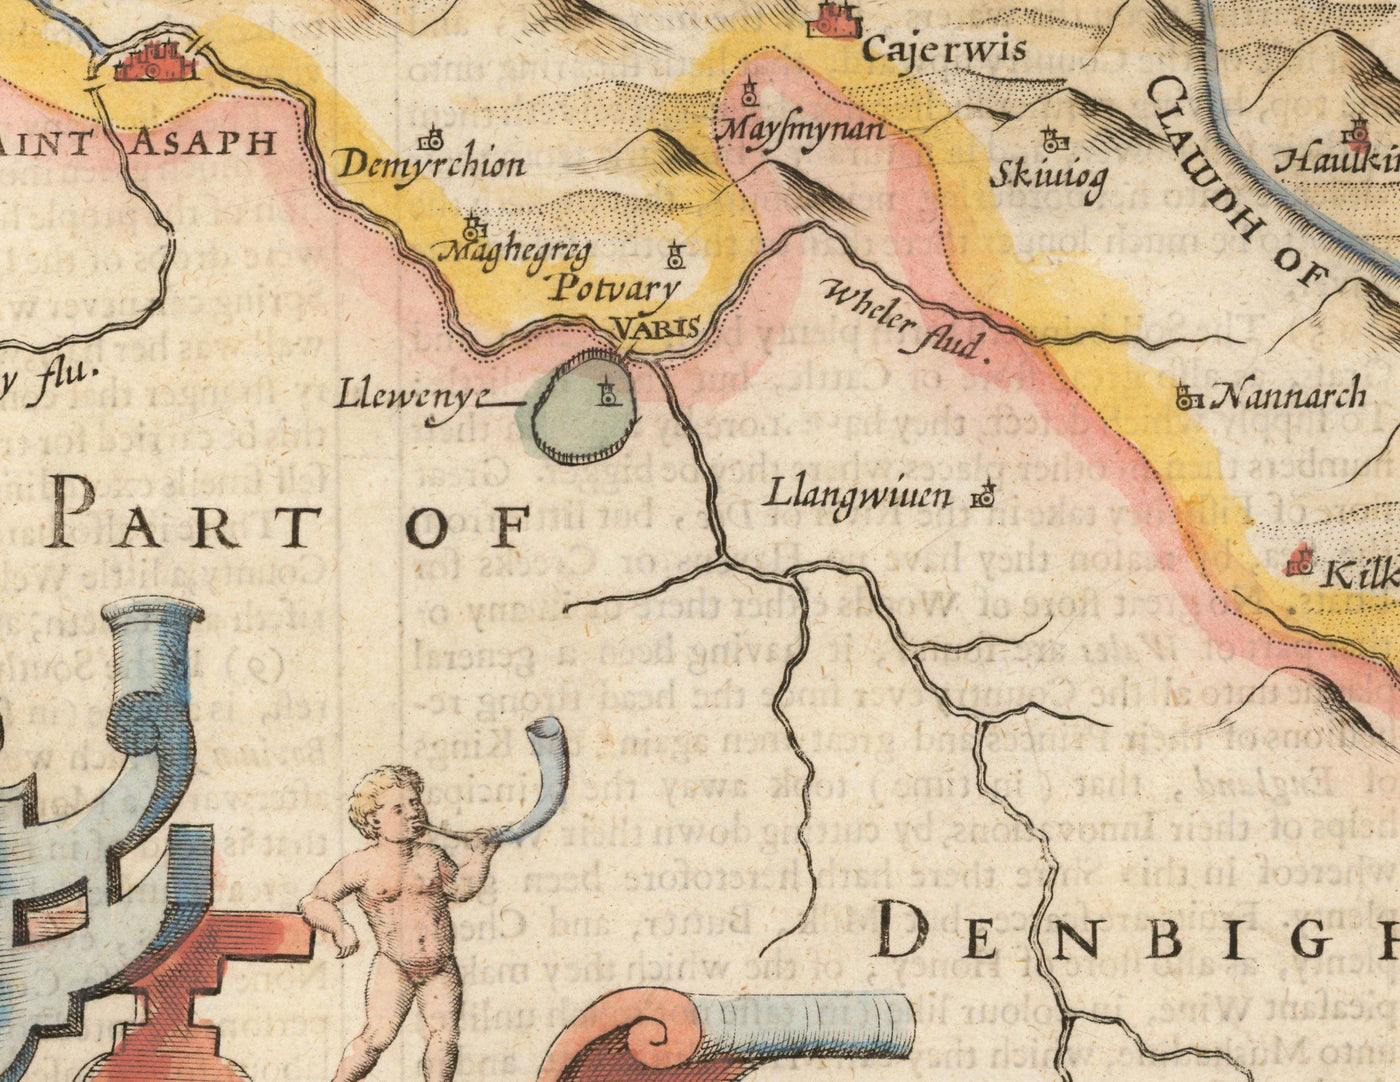 Alte Karte von Flinthire Wales, 1611 von John Speed ​​- Flint, Form, Chester, Wrexham